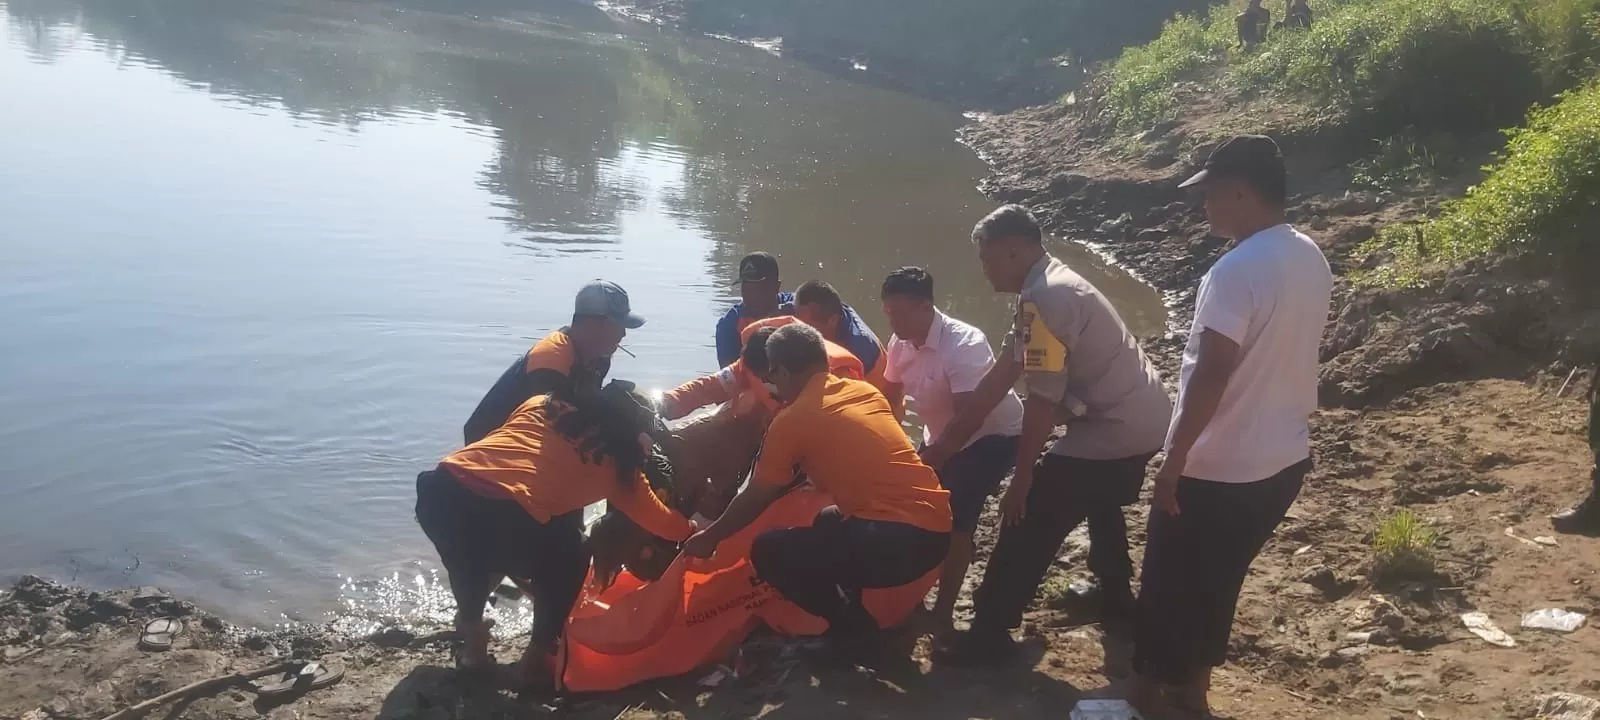 Evakuasi korban laka air Sungai Bengawan Solo. (Foto : Abdul Alim)